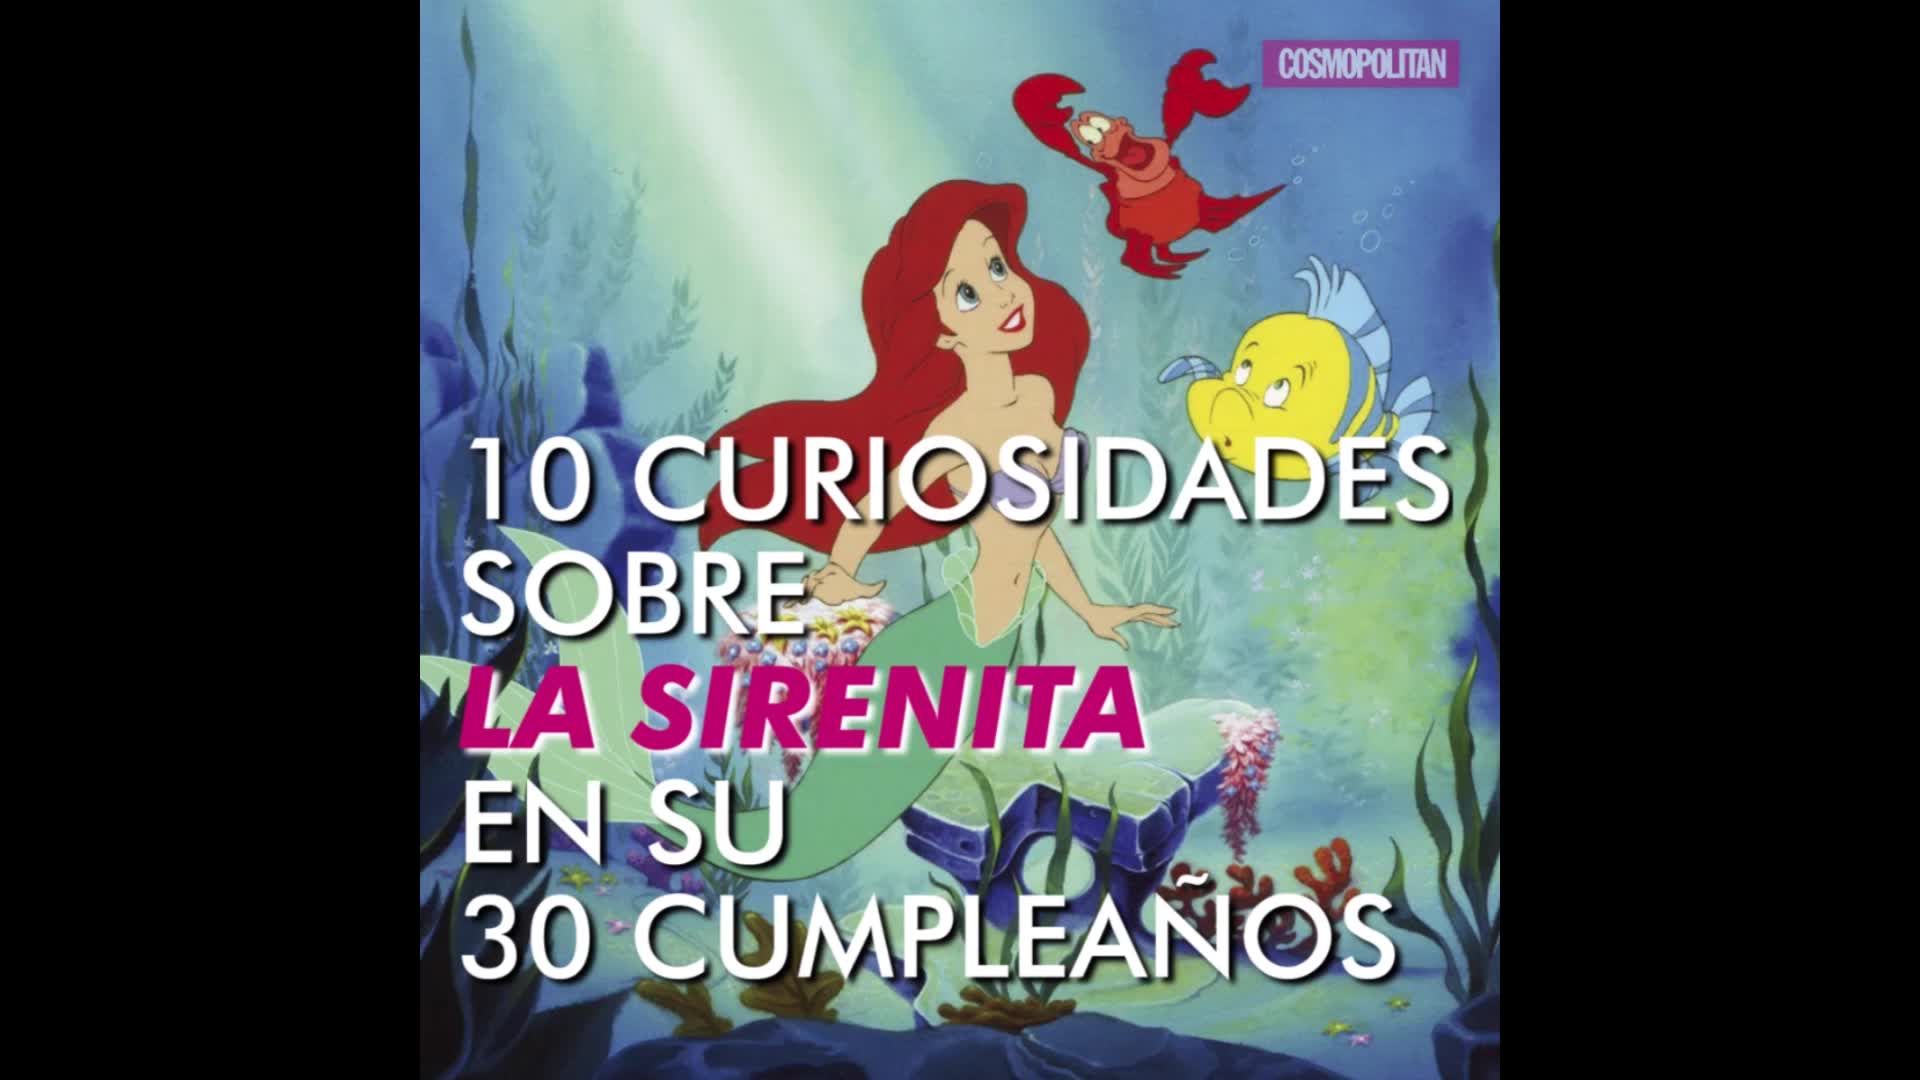 La Sirenita cumple 30 años y estas son las 10 mejores curiosidades